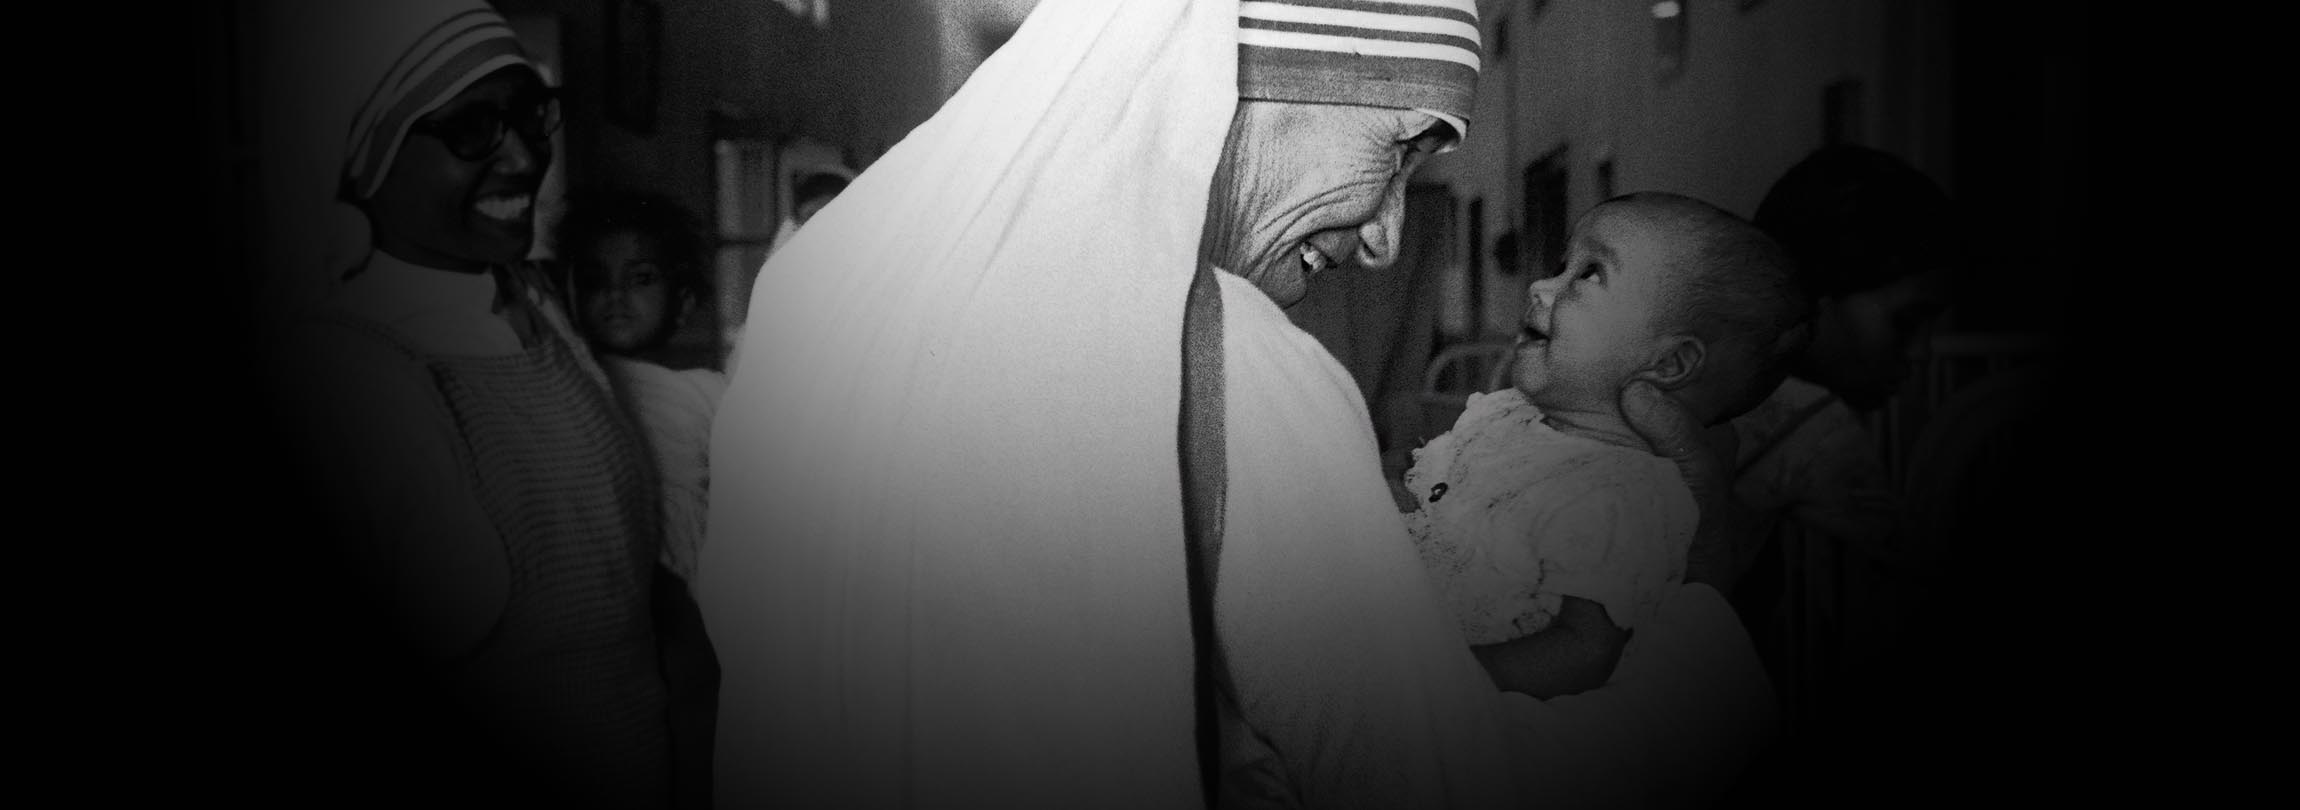 Caminho livre para a canonização de Madre Teresa de Calcutá